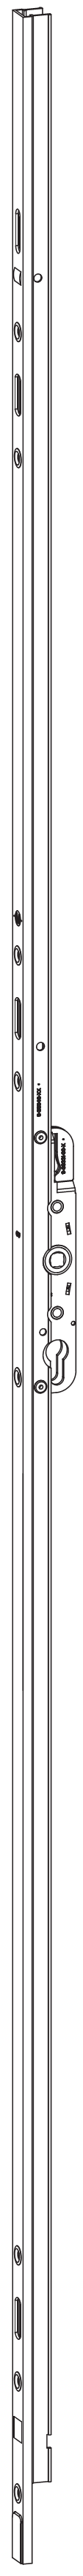 GU-ITALIA -  Cremonese HS 934 - 937 per alzante scorrevole altezza maniglia fissa con chiusura a perni - gr / dim. A PERNI DI CHIUSURA - entrata 37,5 - alt. man. 400 - lbb/hbb 1210 - 1840